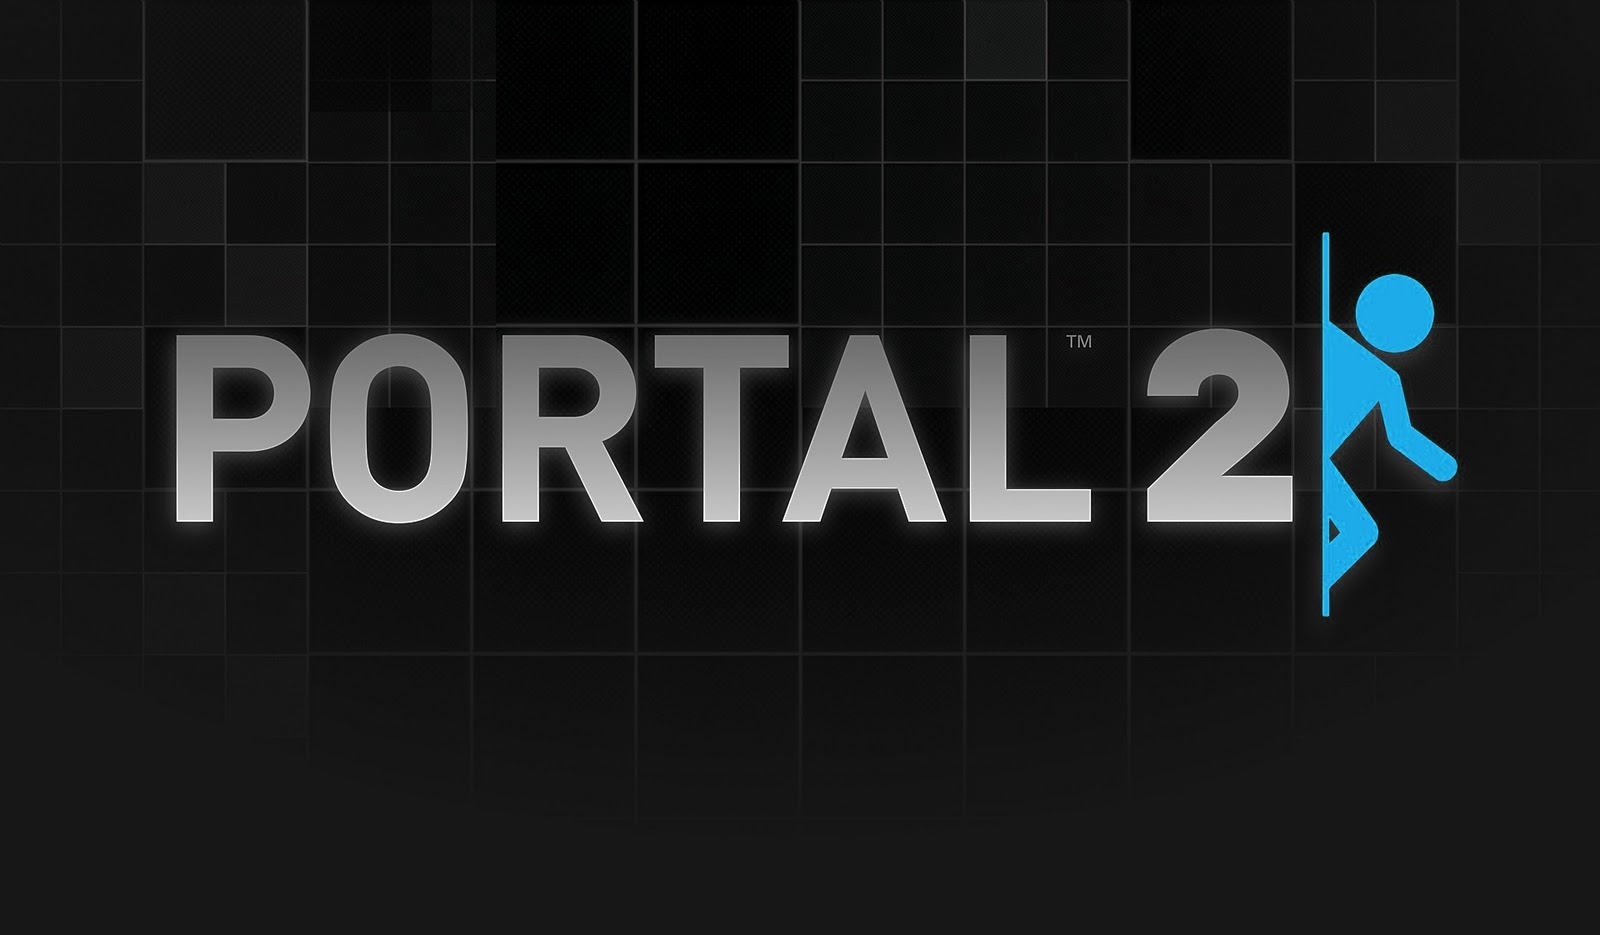 portal 2 wallpapers portal 2 es un juego desarrollado por valve donde